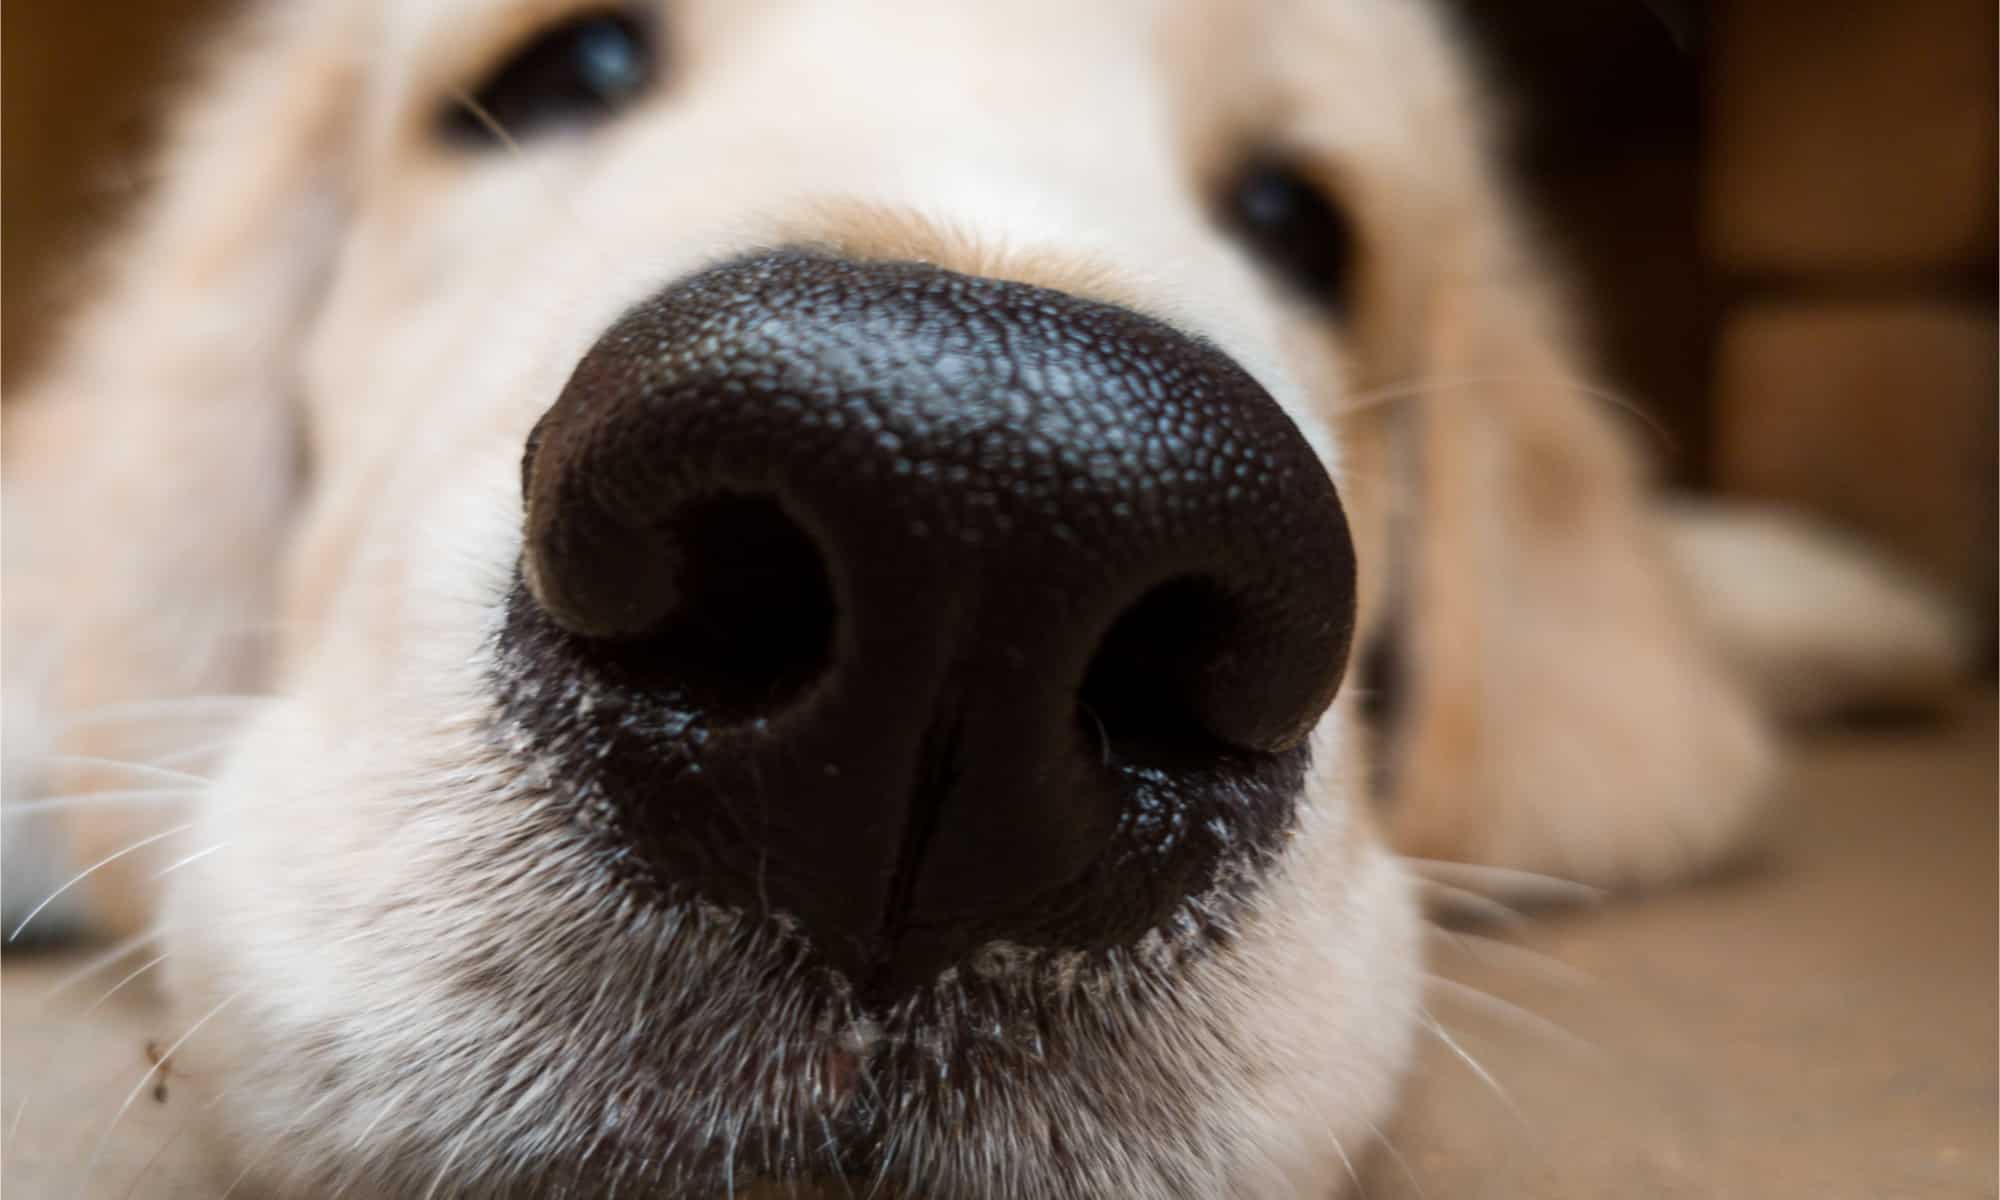 Golden retriever puppy nose close up